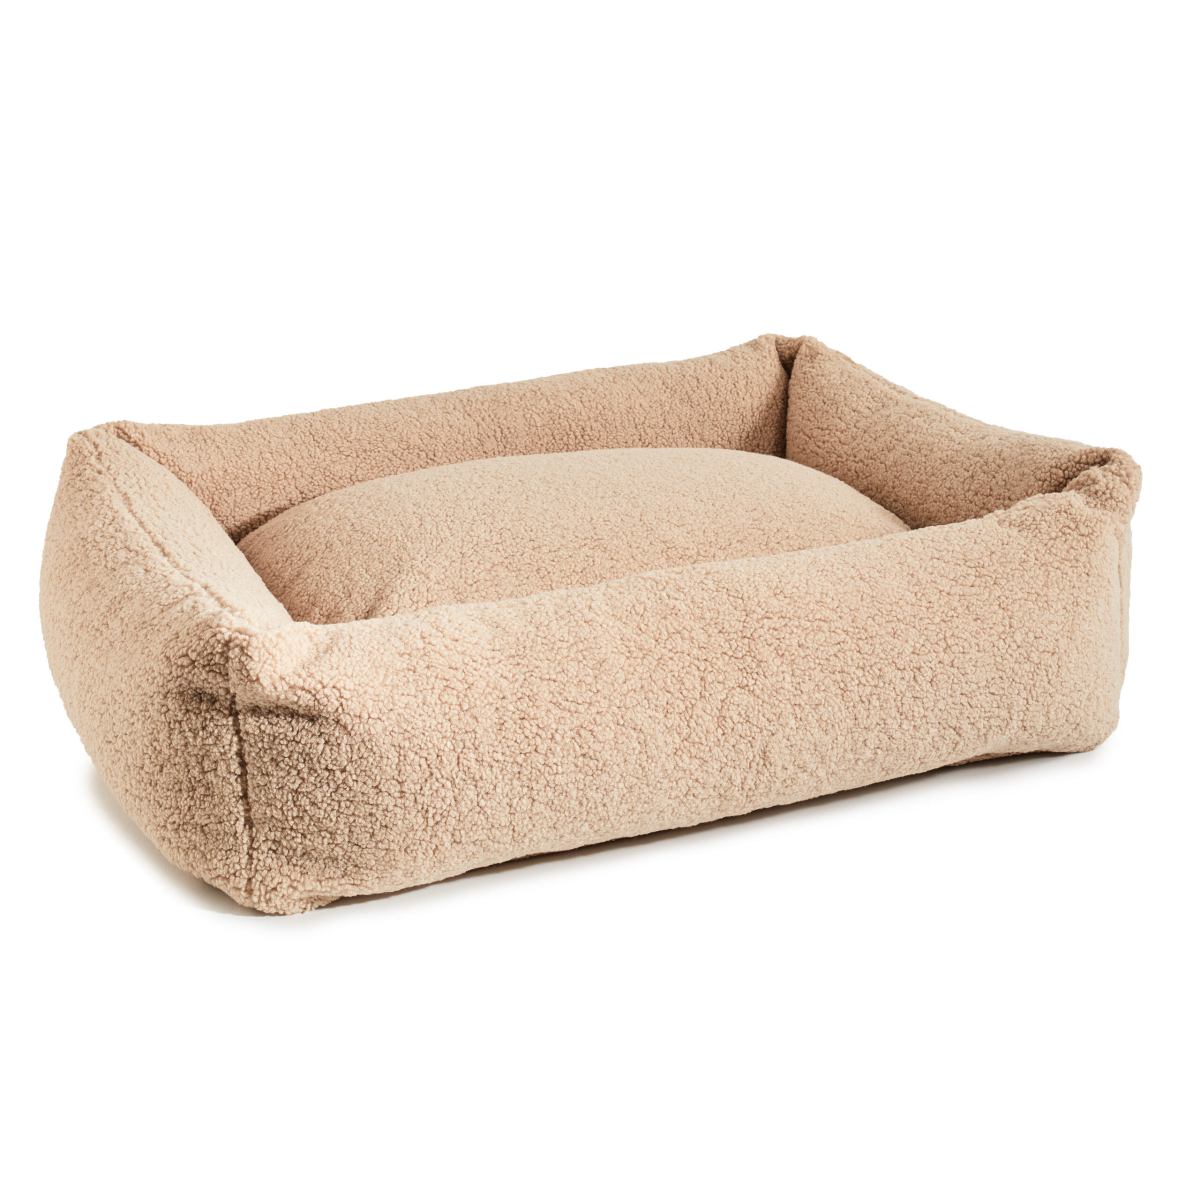 Klassiek hondenbed - TEDDY 
Hondenbed TEDDY is een knuffelig en supercomfortabel bed, perfect voor honden die van knuffelen houden. Het is bedekt met trendy bouclé-stof, wat zorgt voor charmeLABONIwafwafKlassiek hondenbed - TEDDY